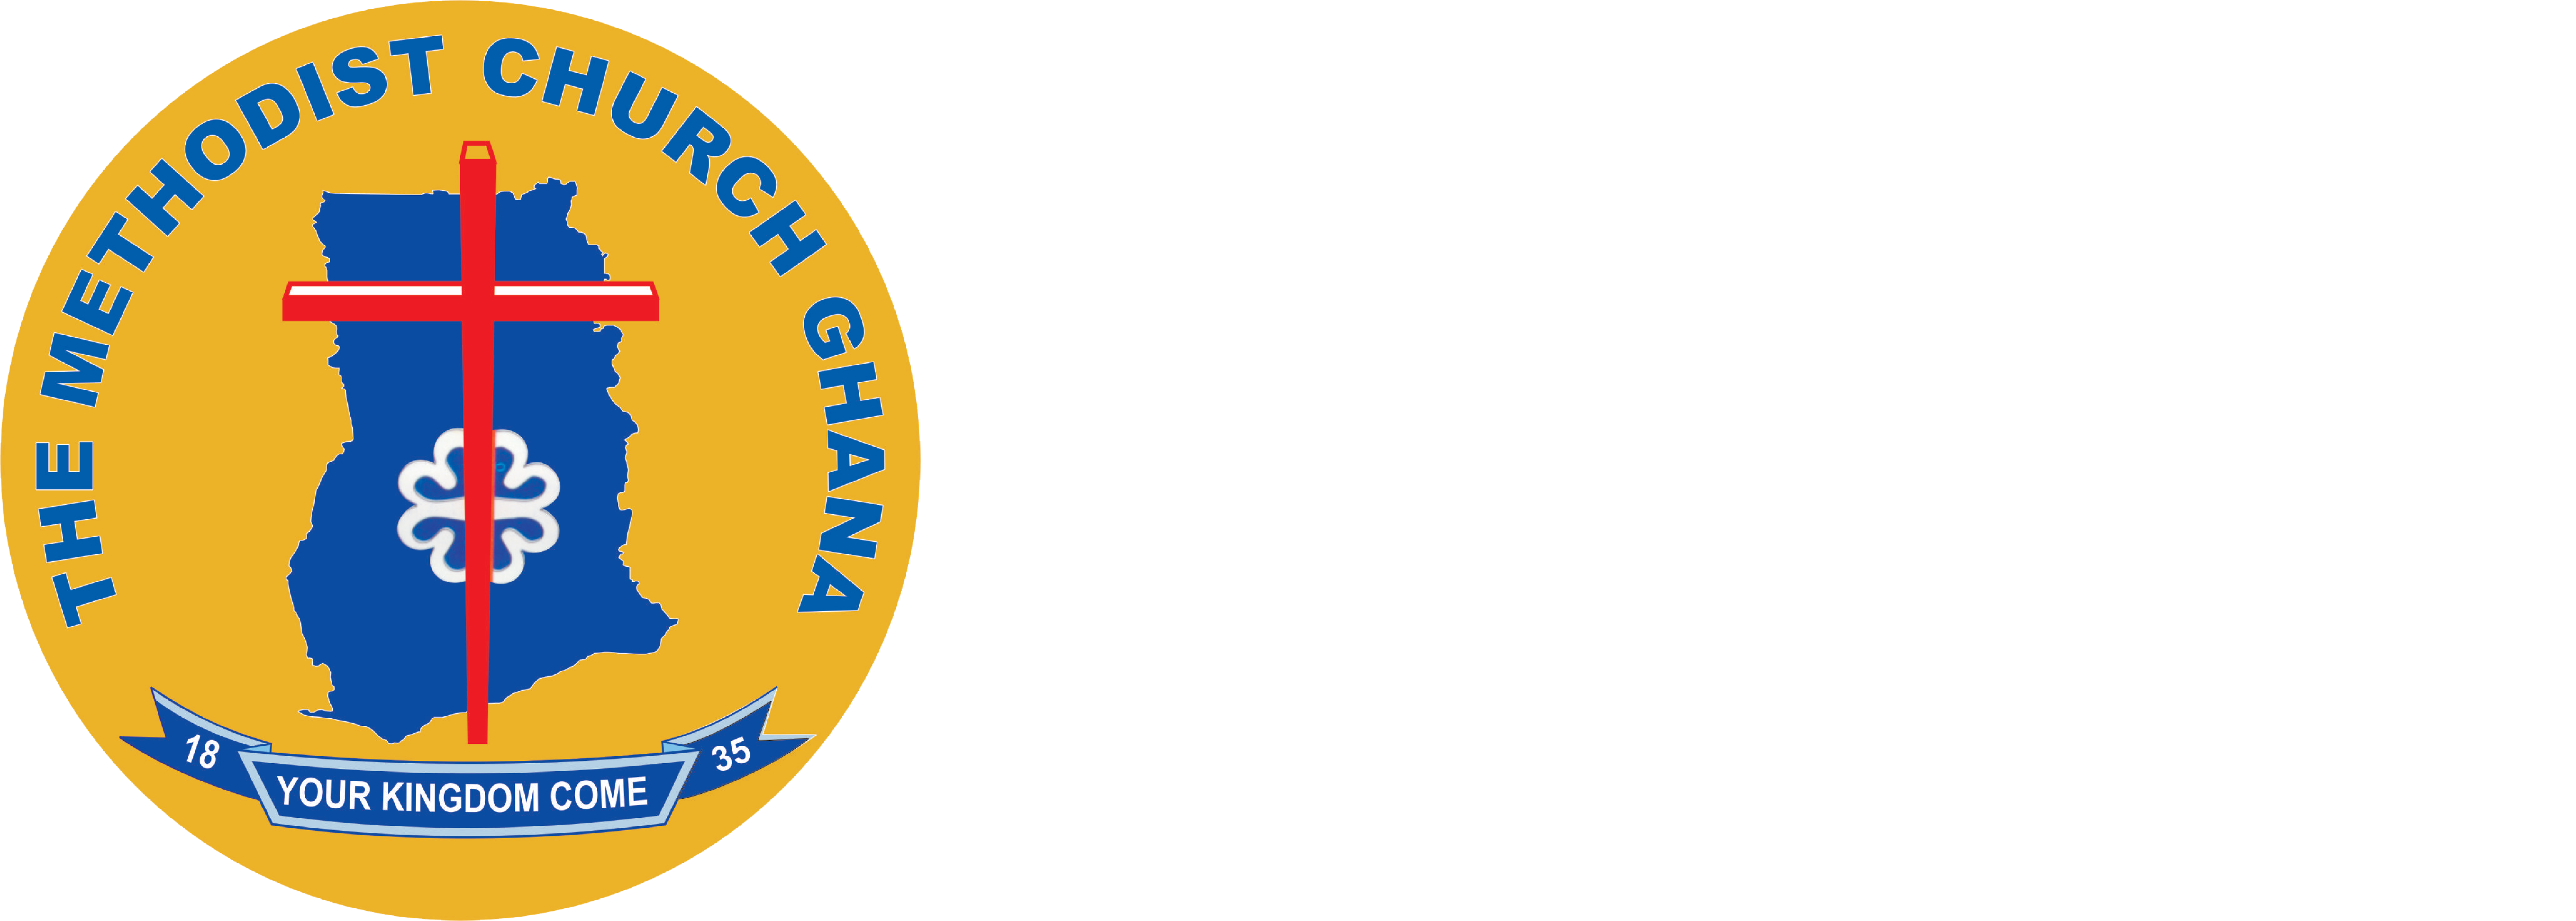 Ebenezer Methodist Society - Community 20, Lashibi